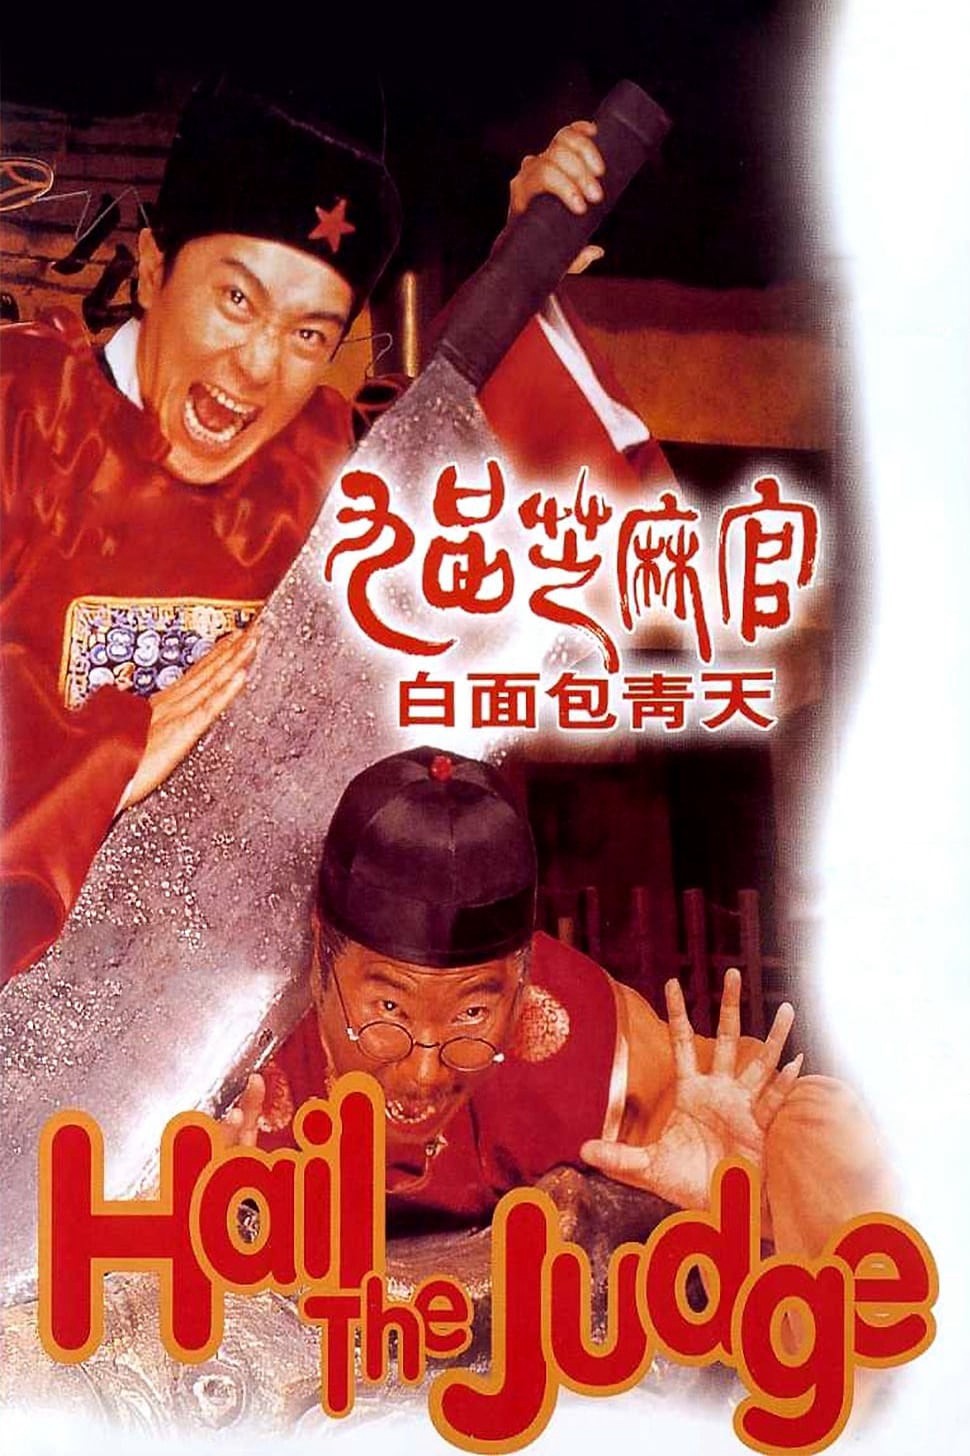 Quan xẩm lốc cốc - Quan xẩm lốc cốc (1994)